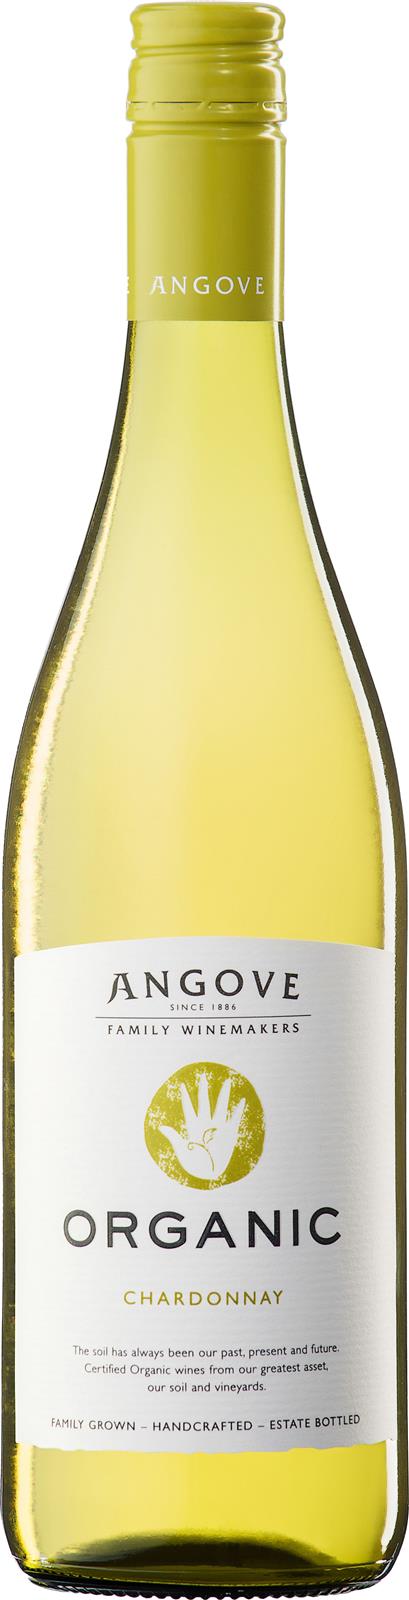 Angove Organic Chardonnay 2019 (Australia)